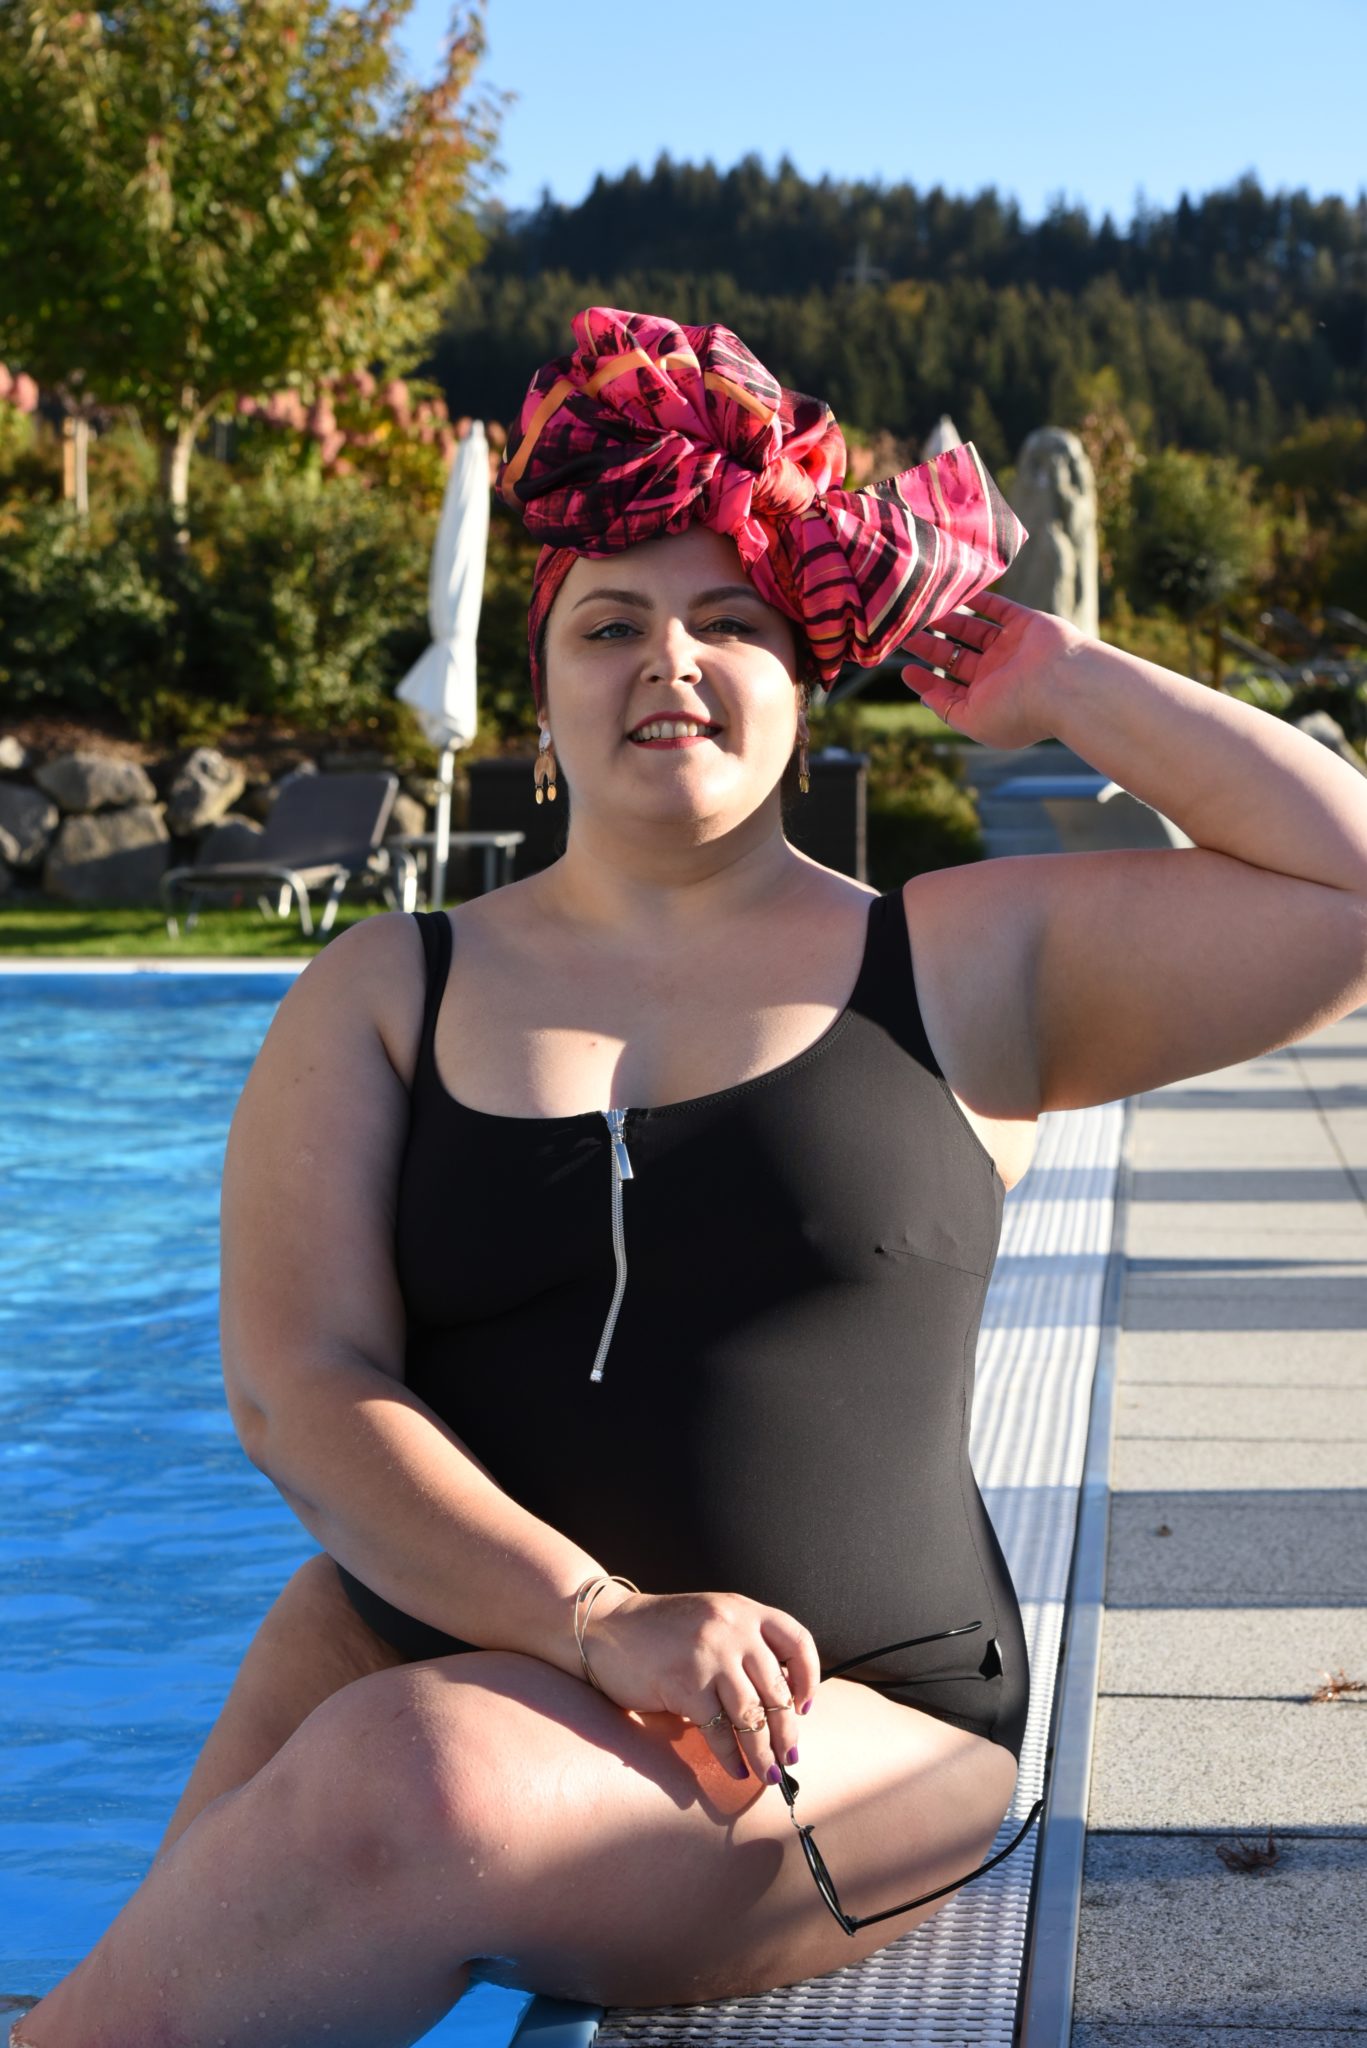 Ubrana w czarny kostium, z różowym trubanem w kształcie kokardy Ula pozuje do zdjęcia na brzegu basenu